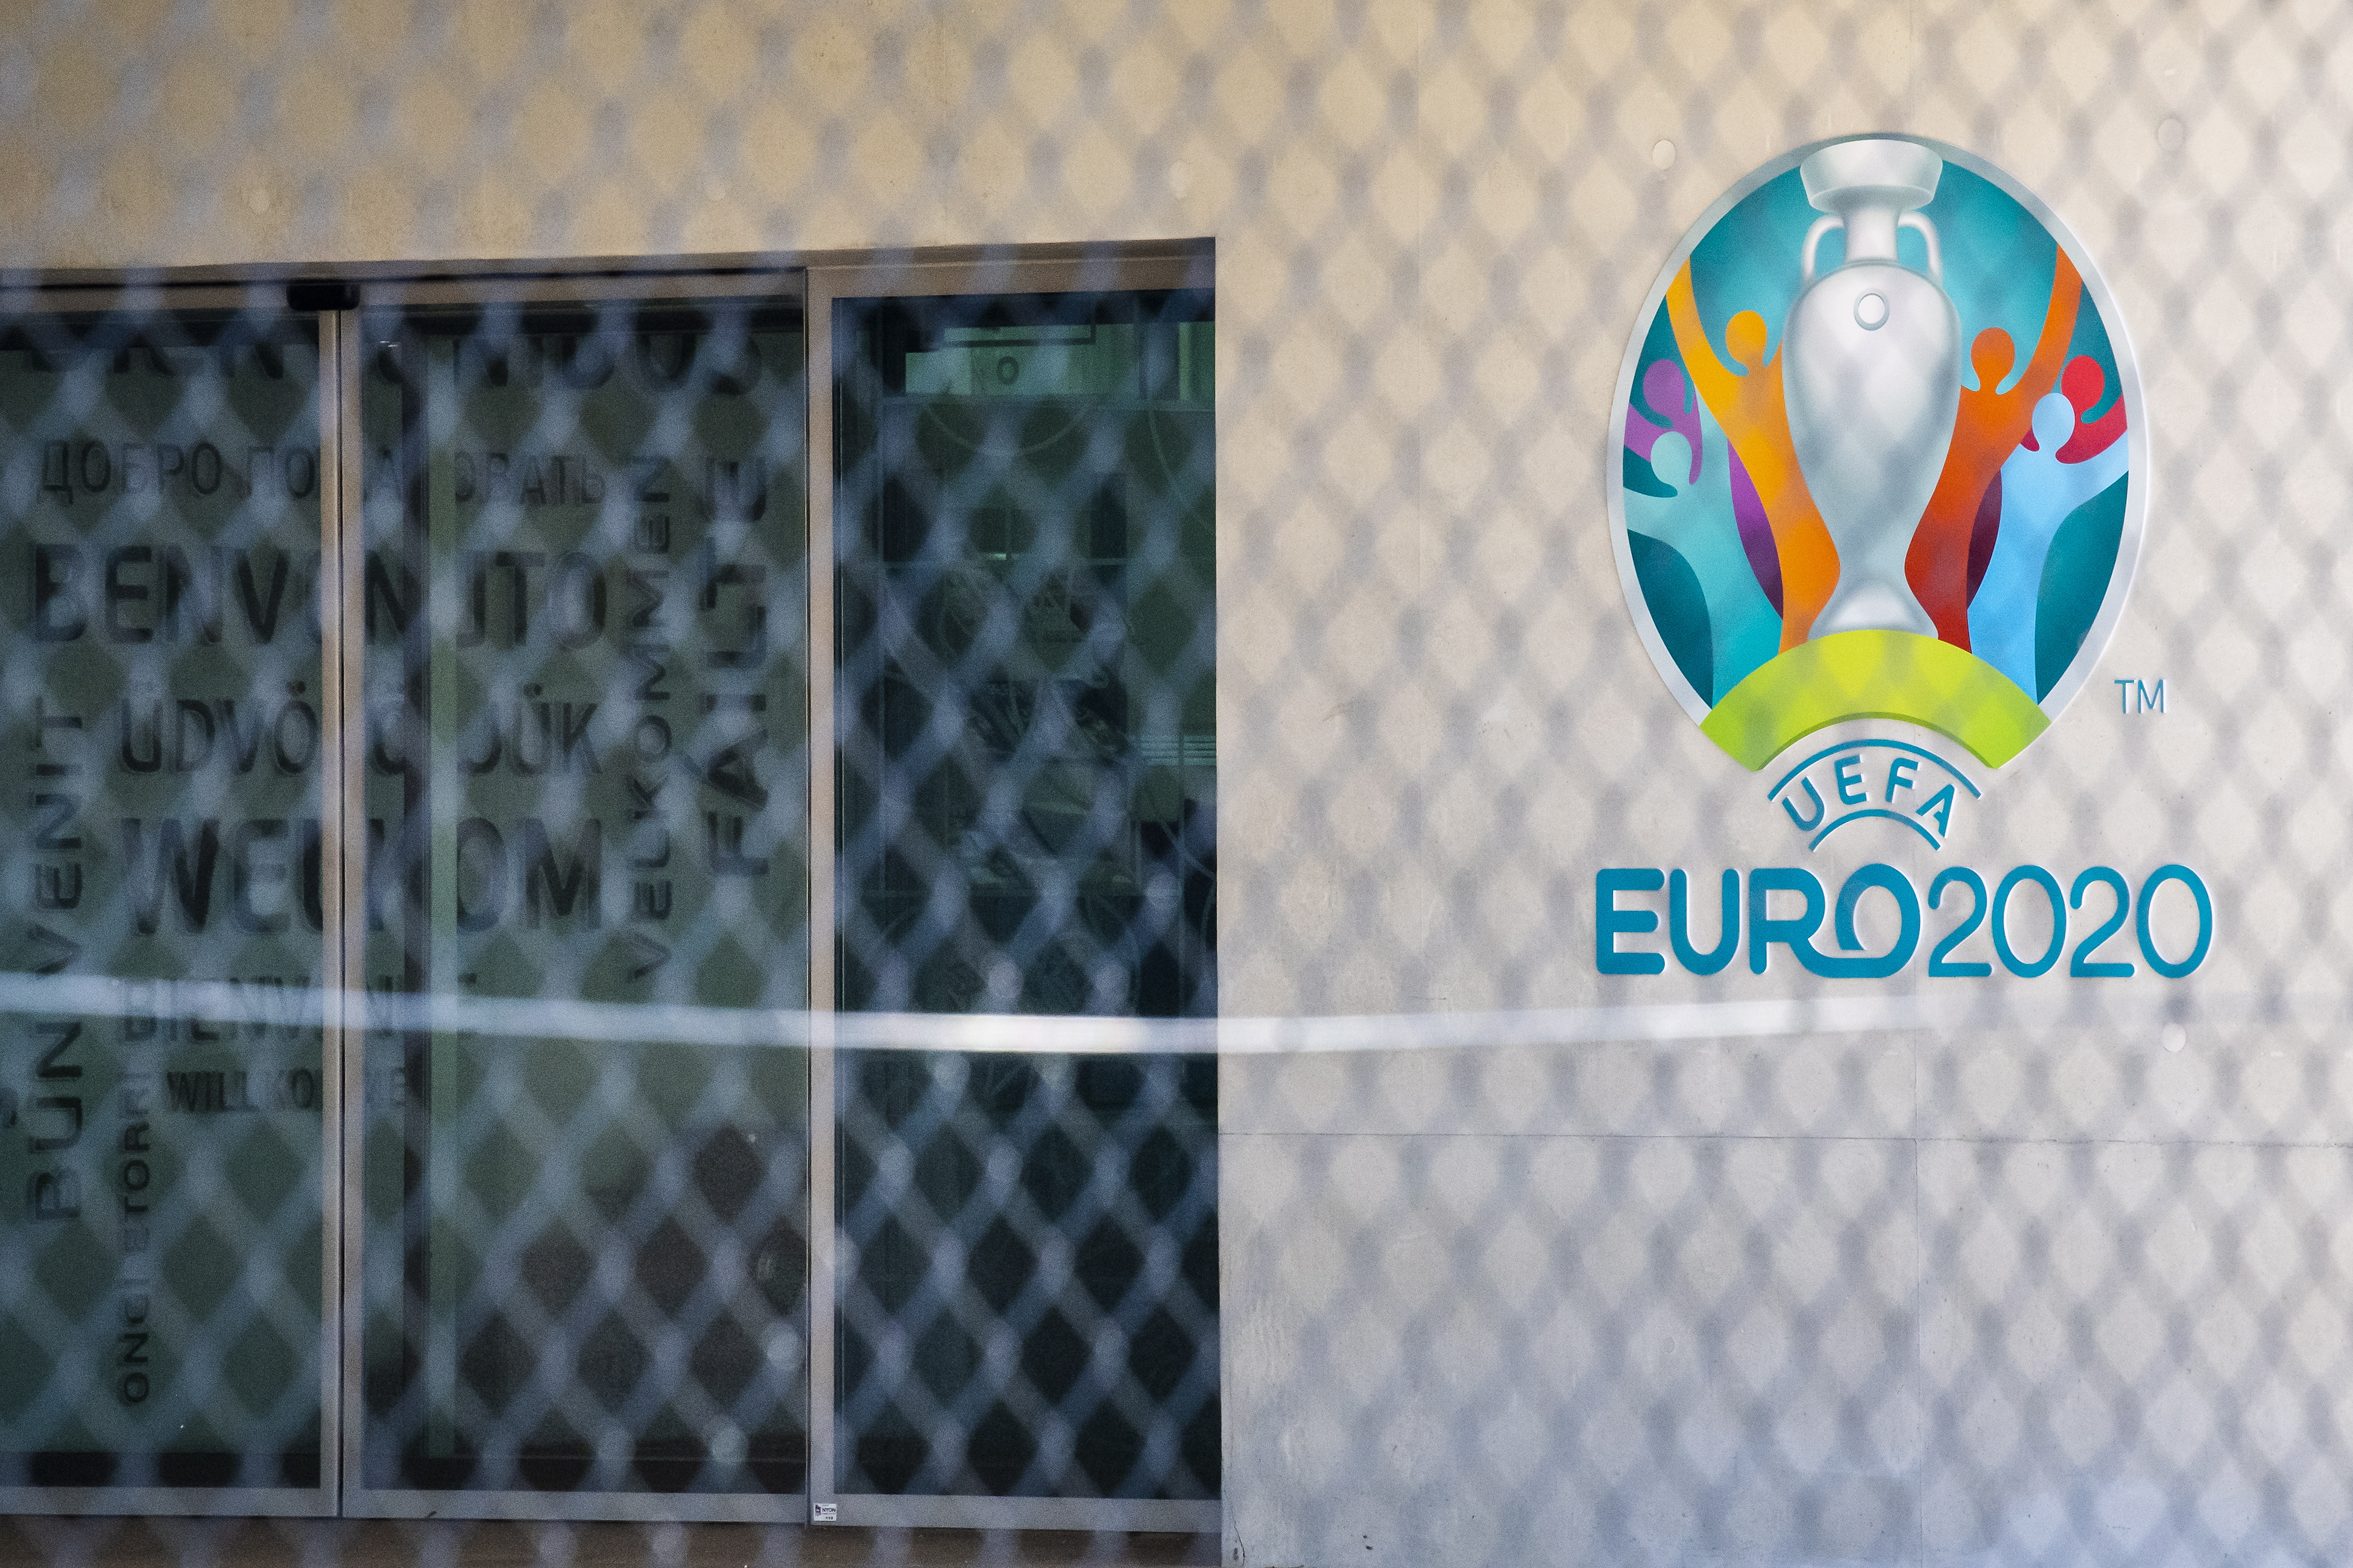 EK voetbal 2021 blijft EURO 2020 heten